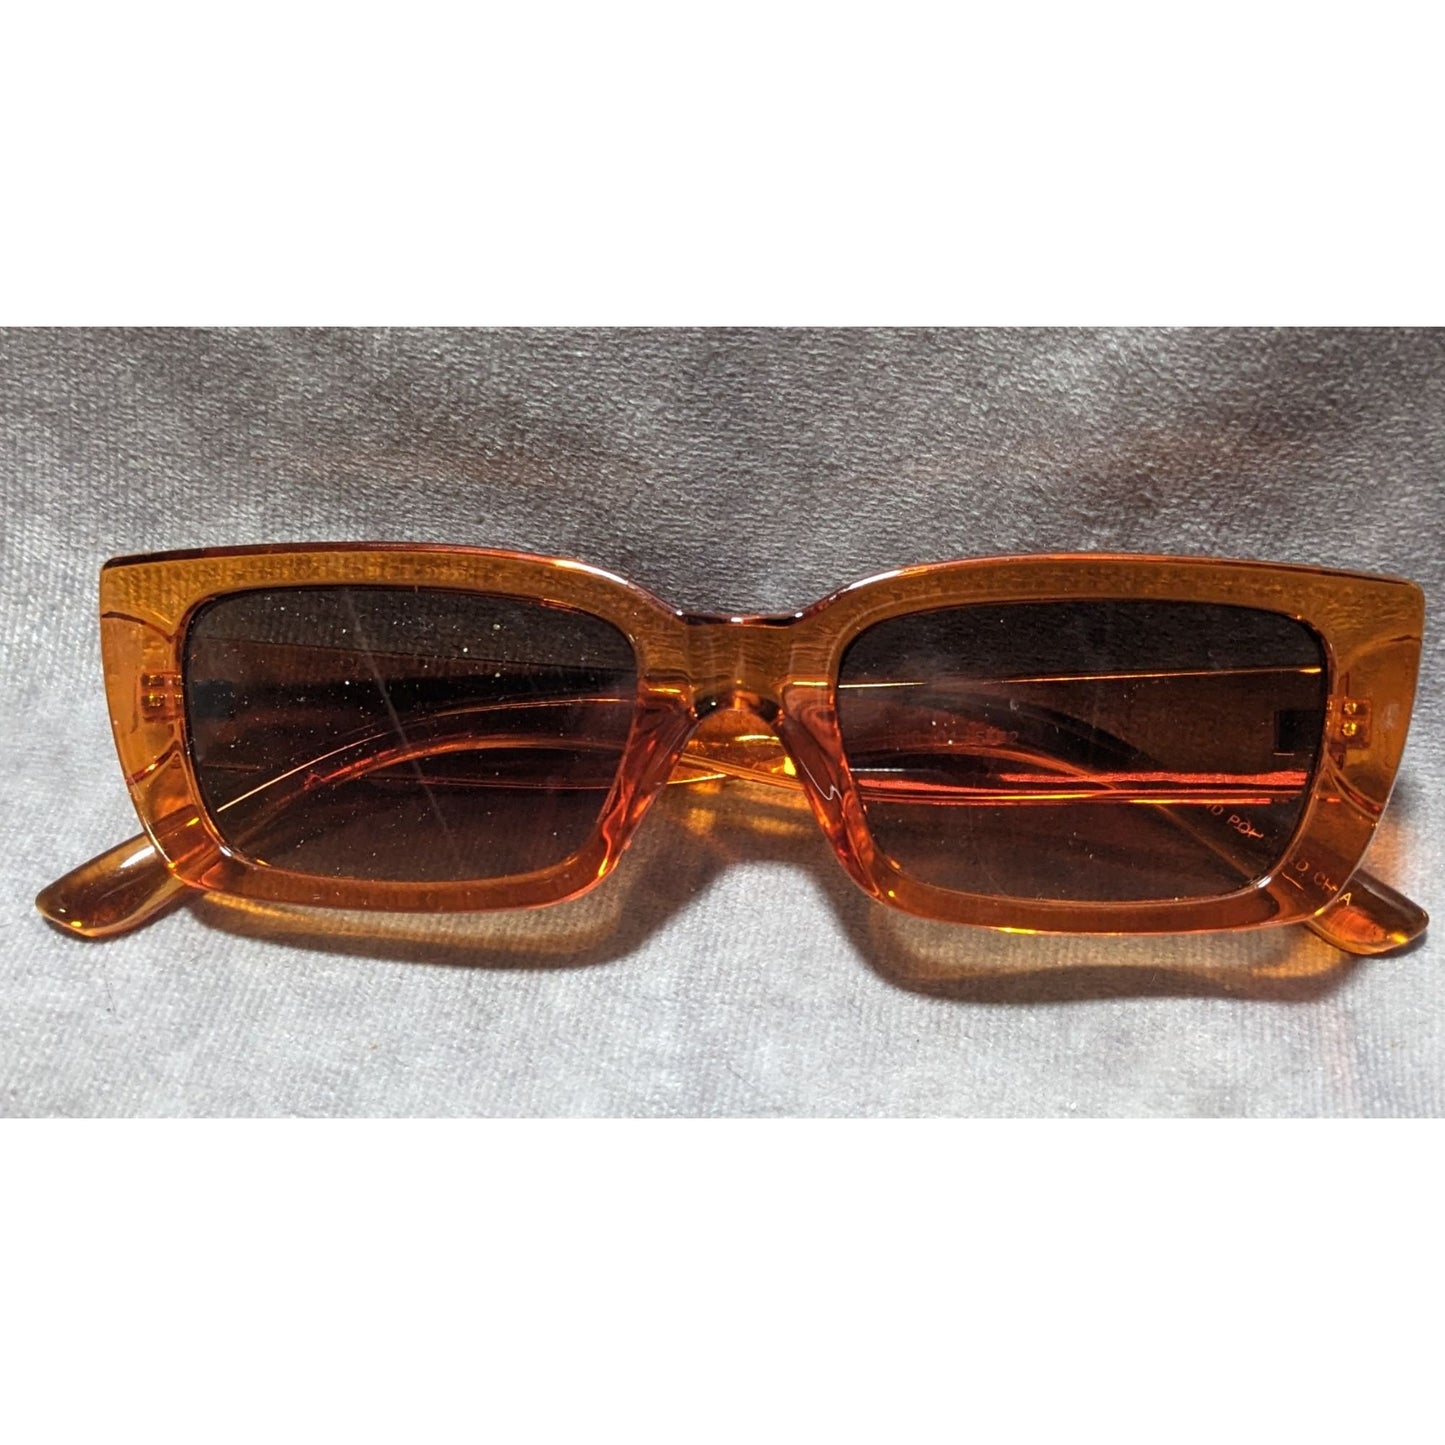 Orange Translucent Sunglasses